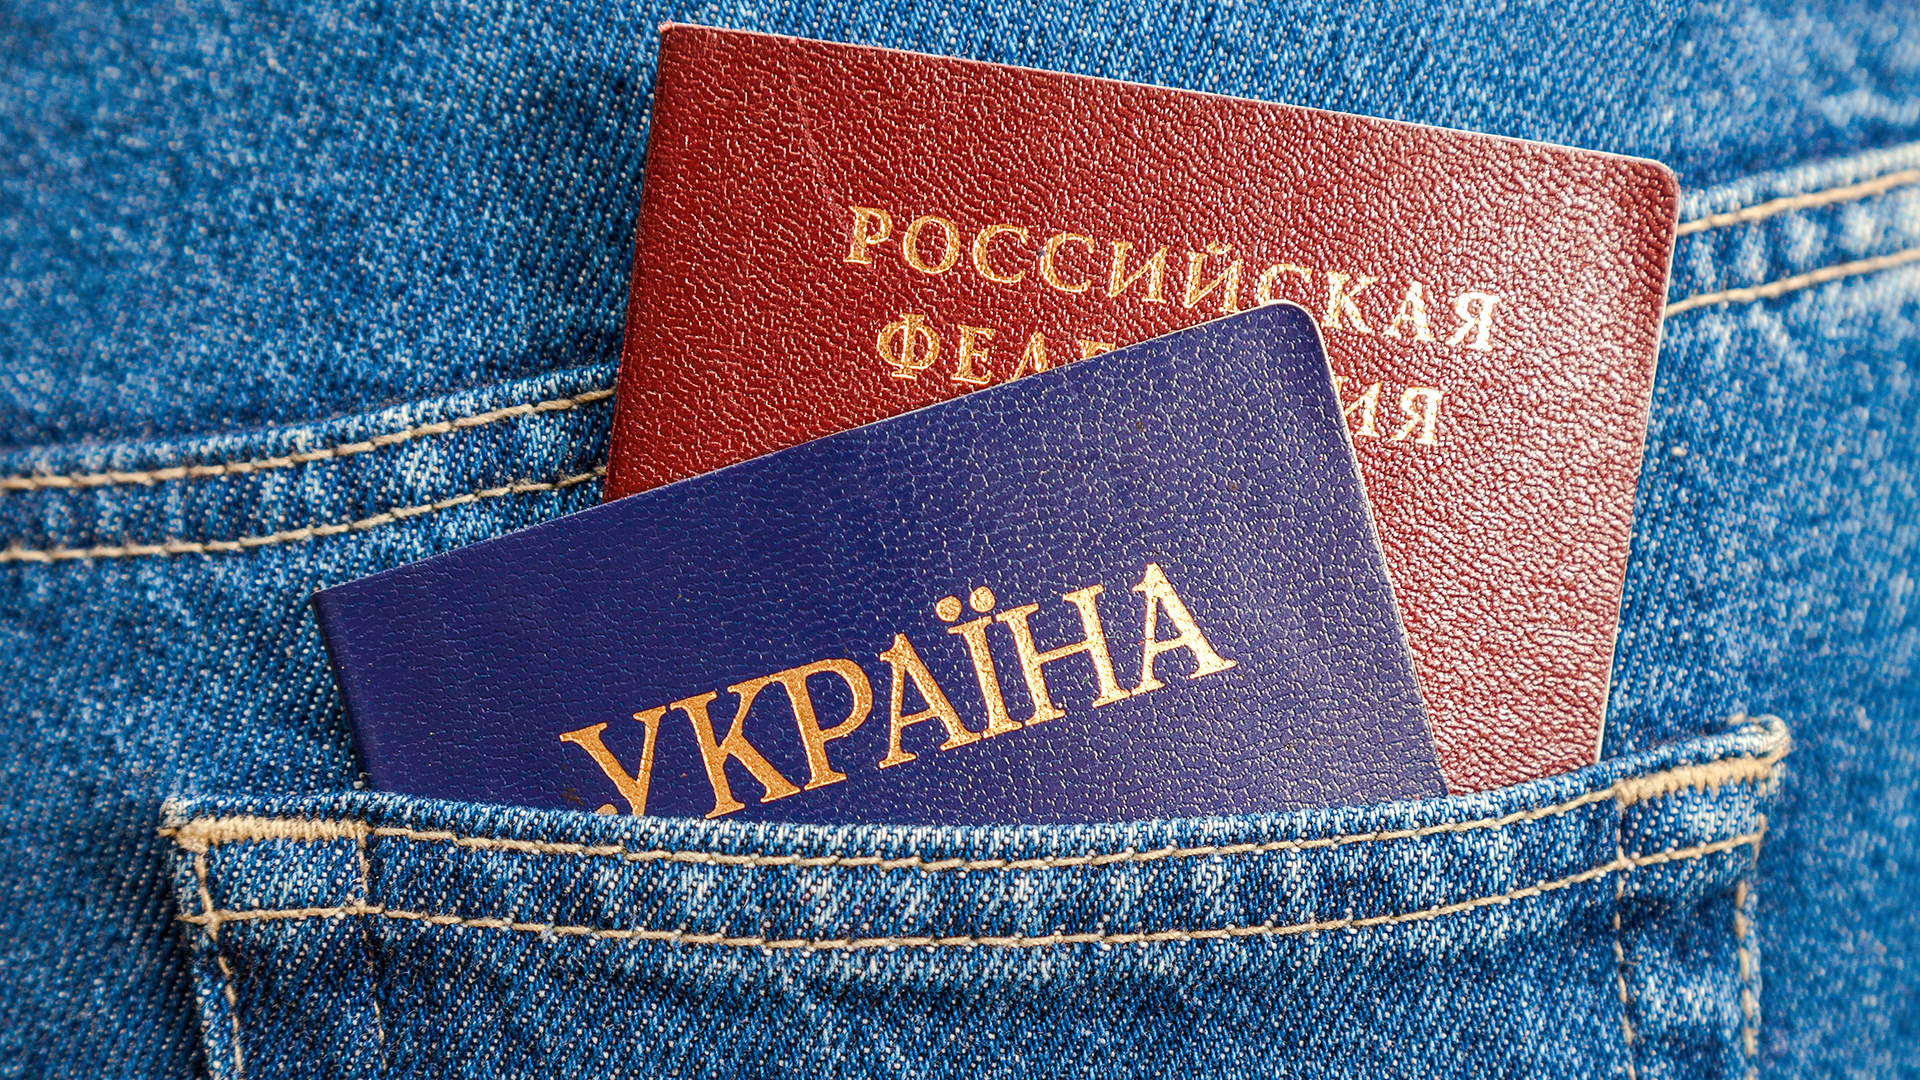 Ucranianos podem ser demitidos se não prestarem informações sobre seus parentes na Rússia